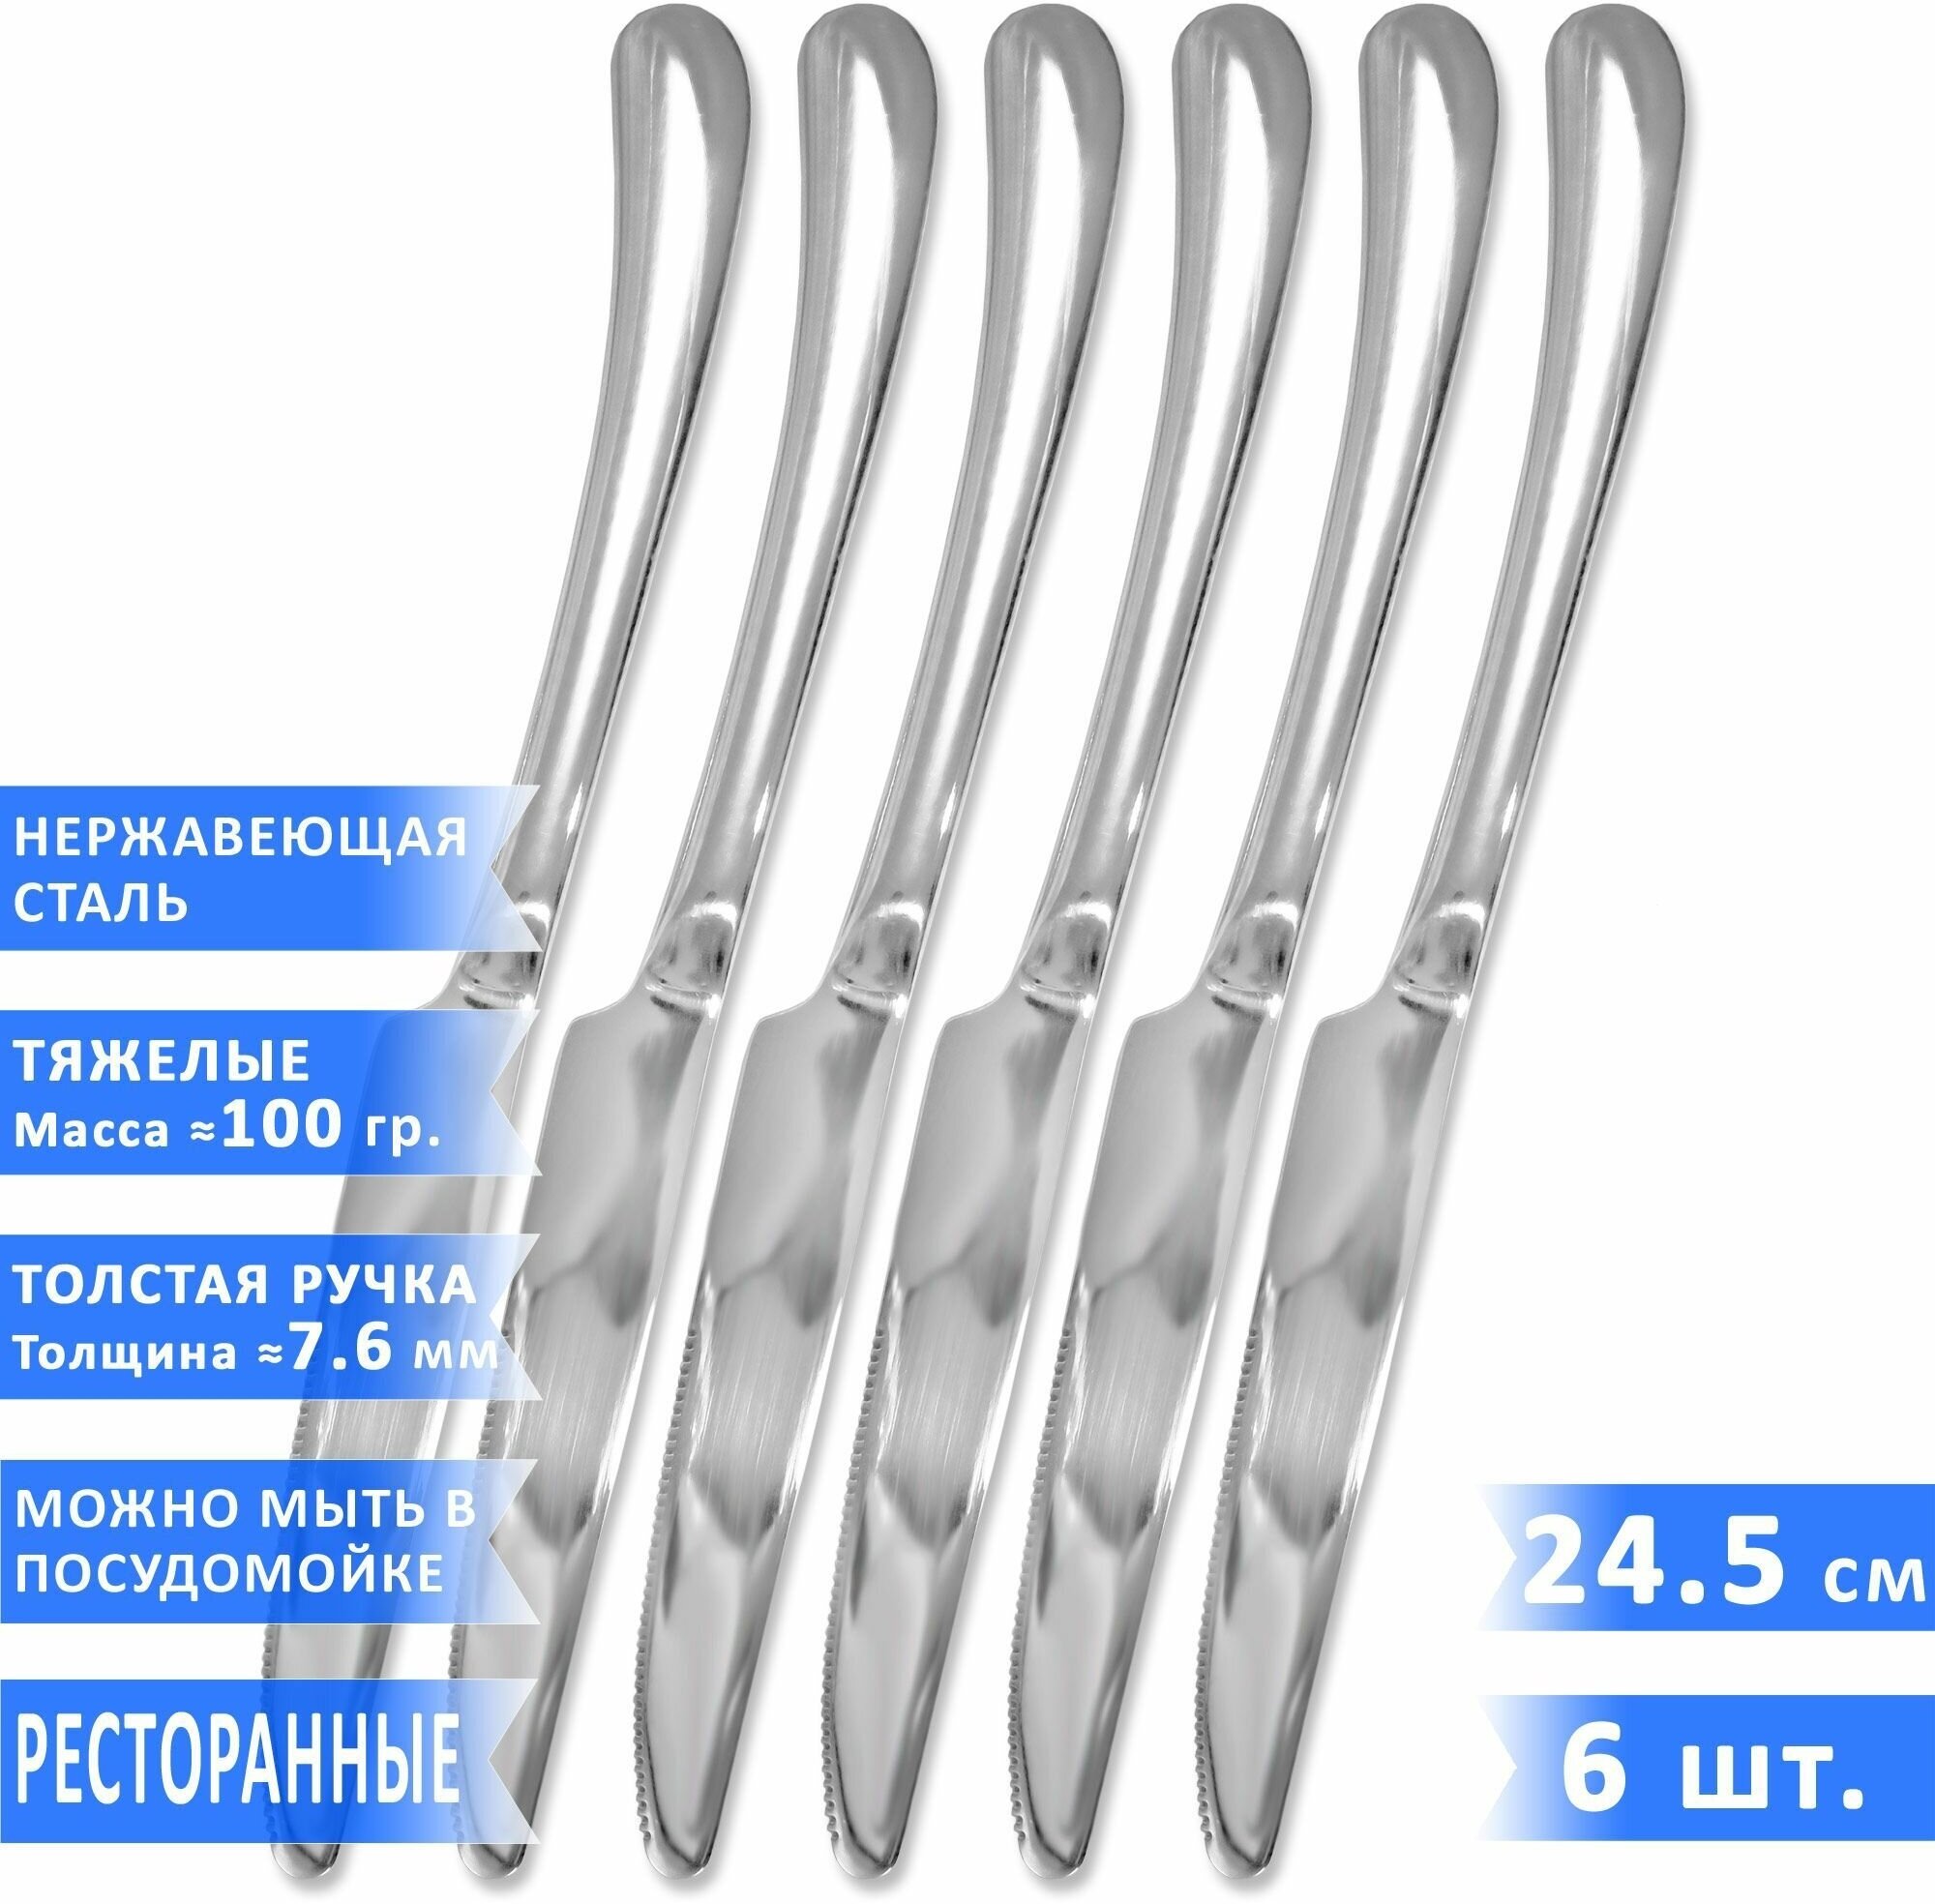 Набор столовых ножей VELERCART Premium, нержавеющая сталь, 24.8 см, 6 шт.